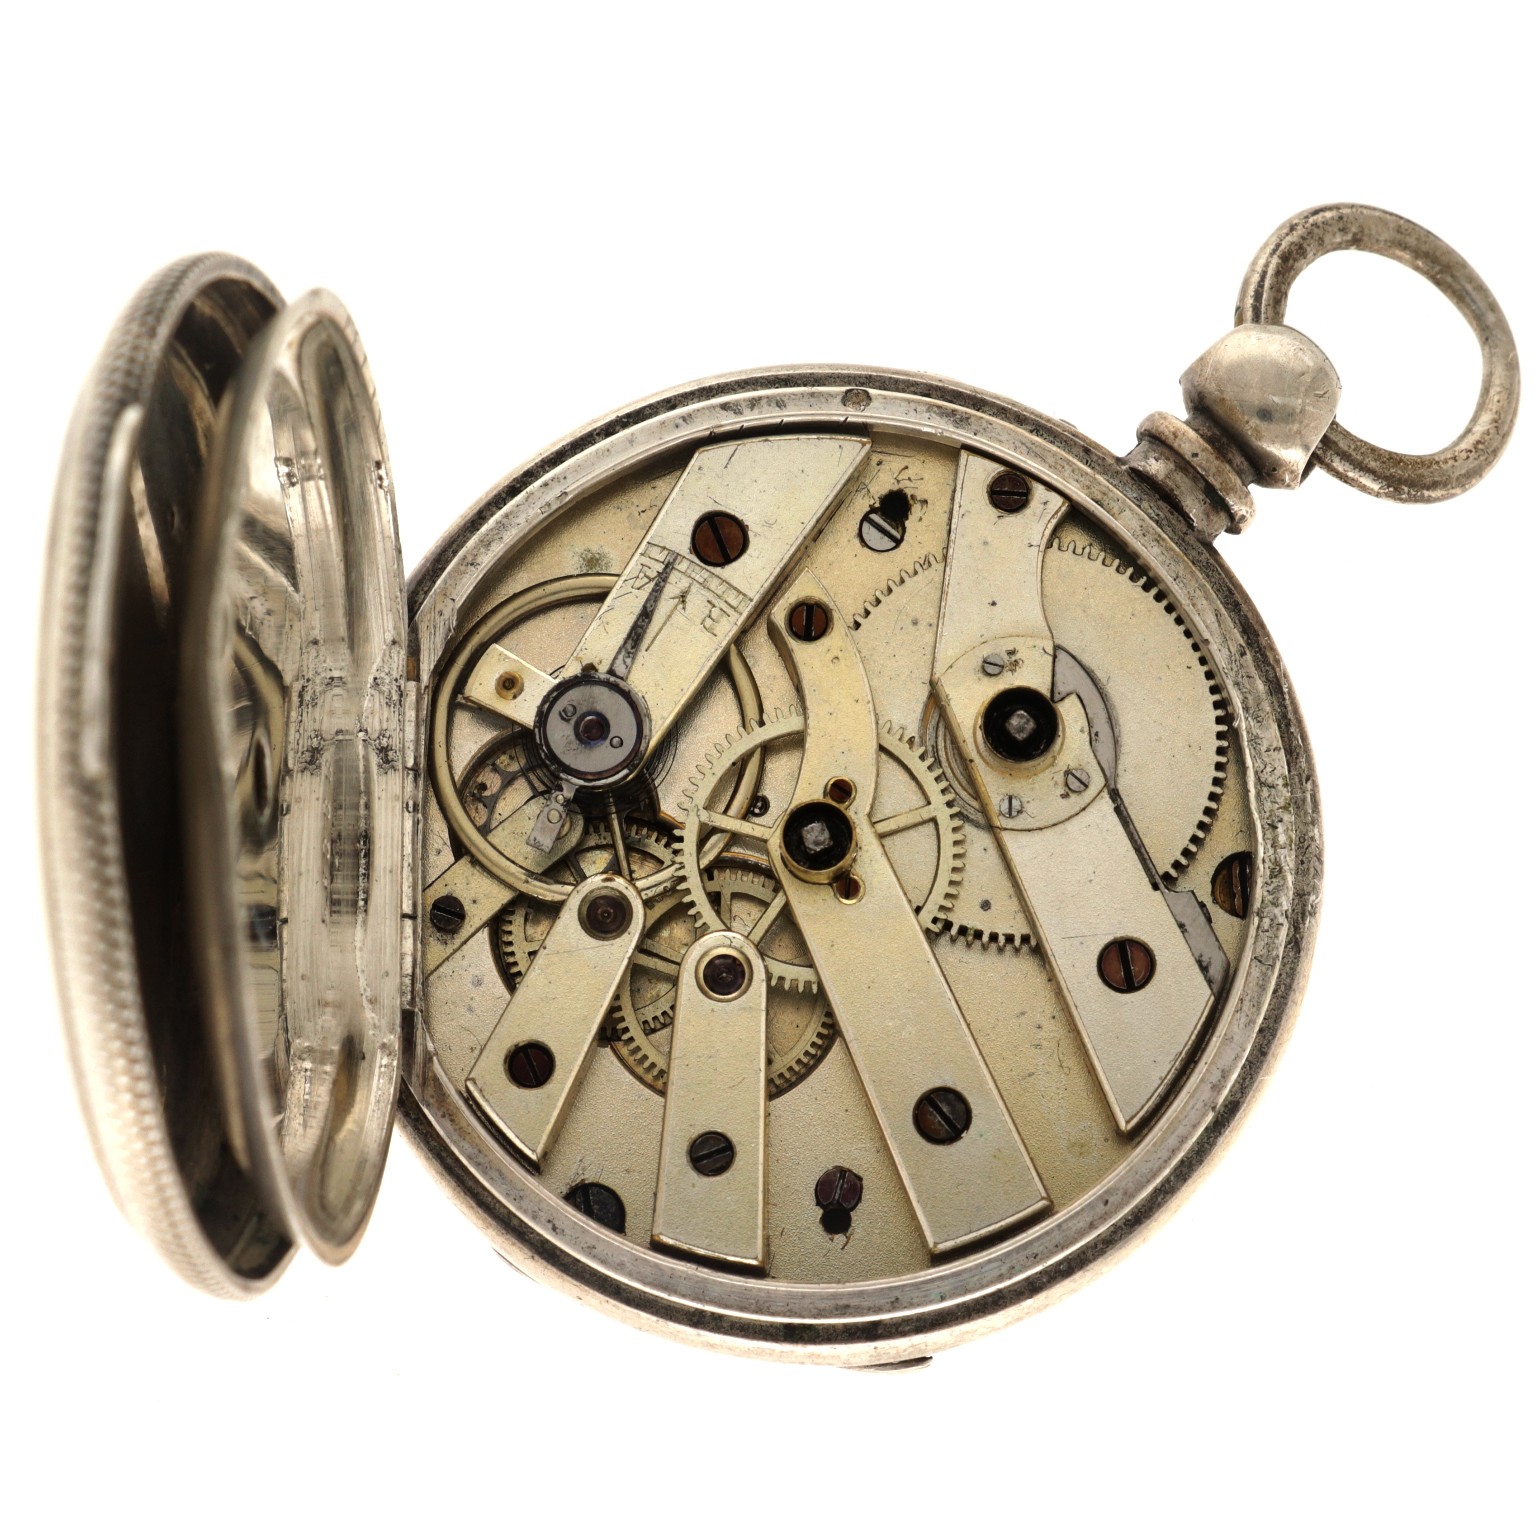 No Reserve - J. Baumer silver (800/1000) - Men's pocket watch - Paris, France. - Image 3 of 5